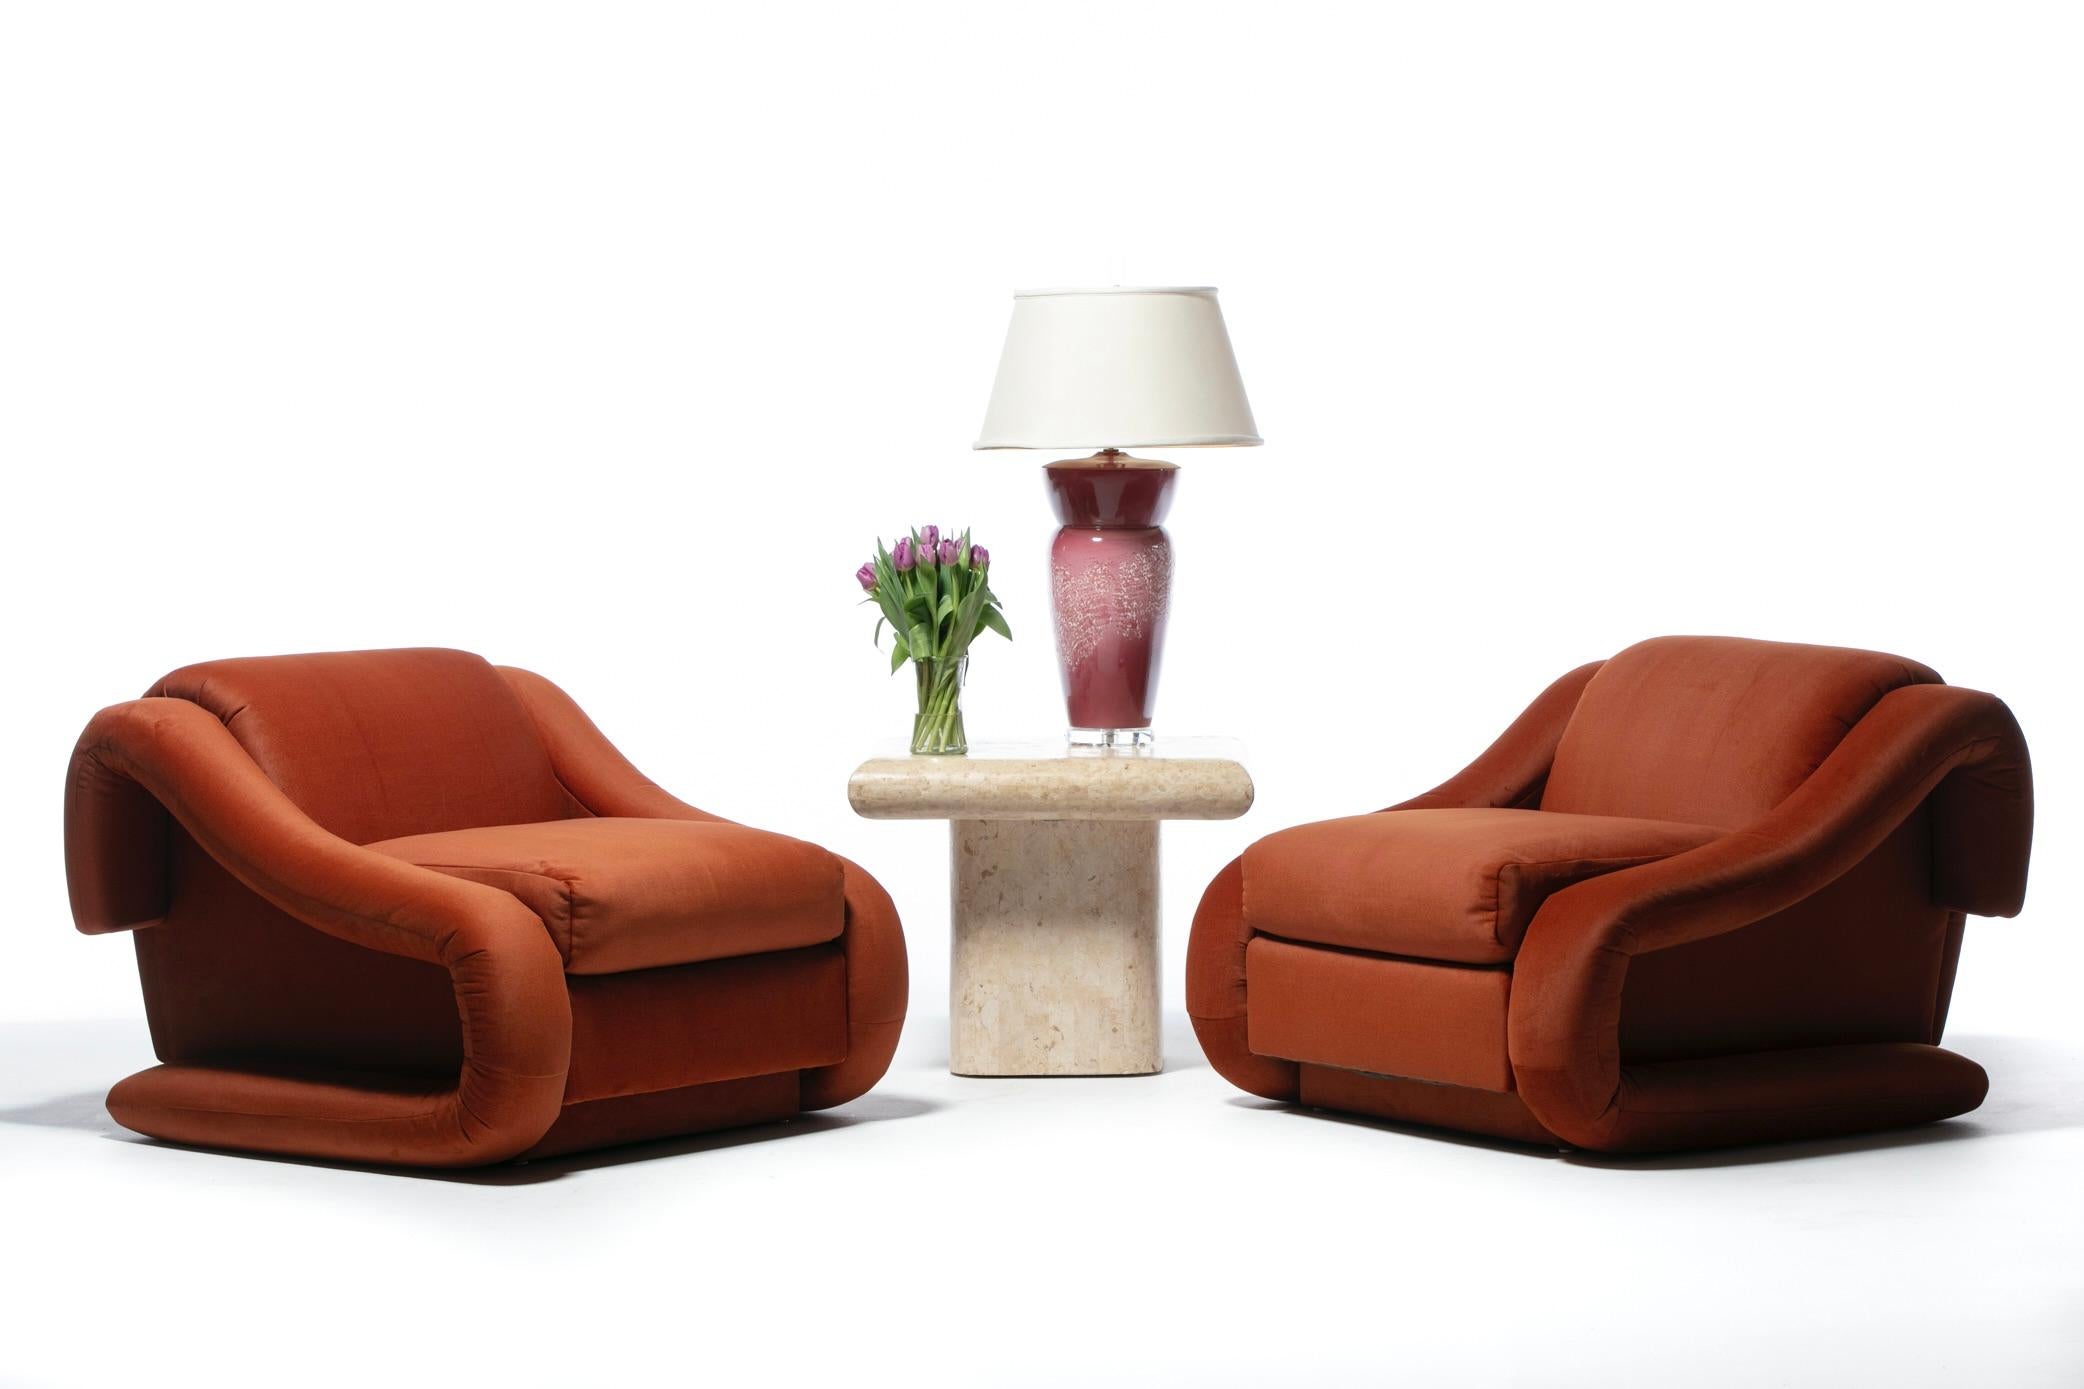 Paire de chaises longues post-modernes de Weiman, incroyablement sculpturales et de taille monumentale, revêtues d'un nouveau tissu orange marmelade très doux. Deux paires disponibles. L'intersection du moderne et du luxe. Des chaises longues qui